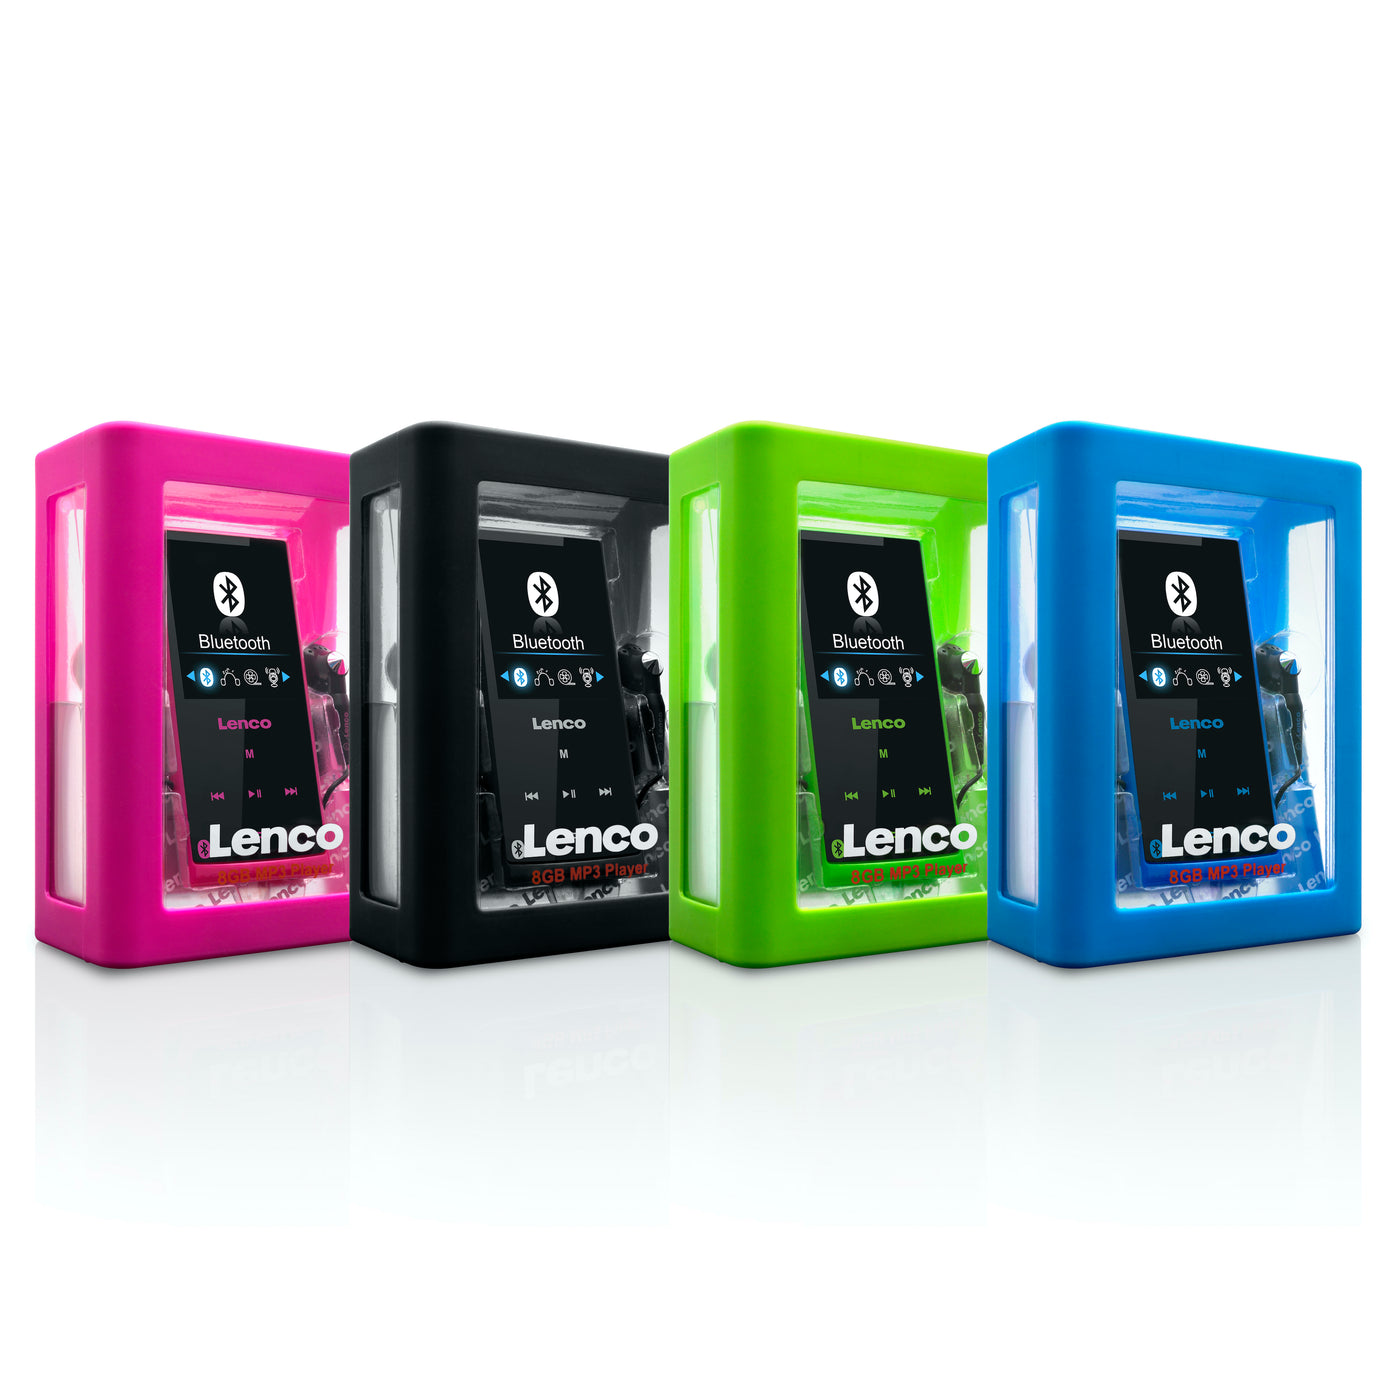 Lenco Xemio-760 Black - MP3/MP4-Player mit Bluetooth® - 8 GB interner Speicher - 2" Farbdisplay - Schwarz